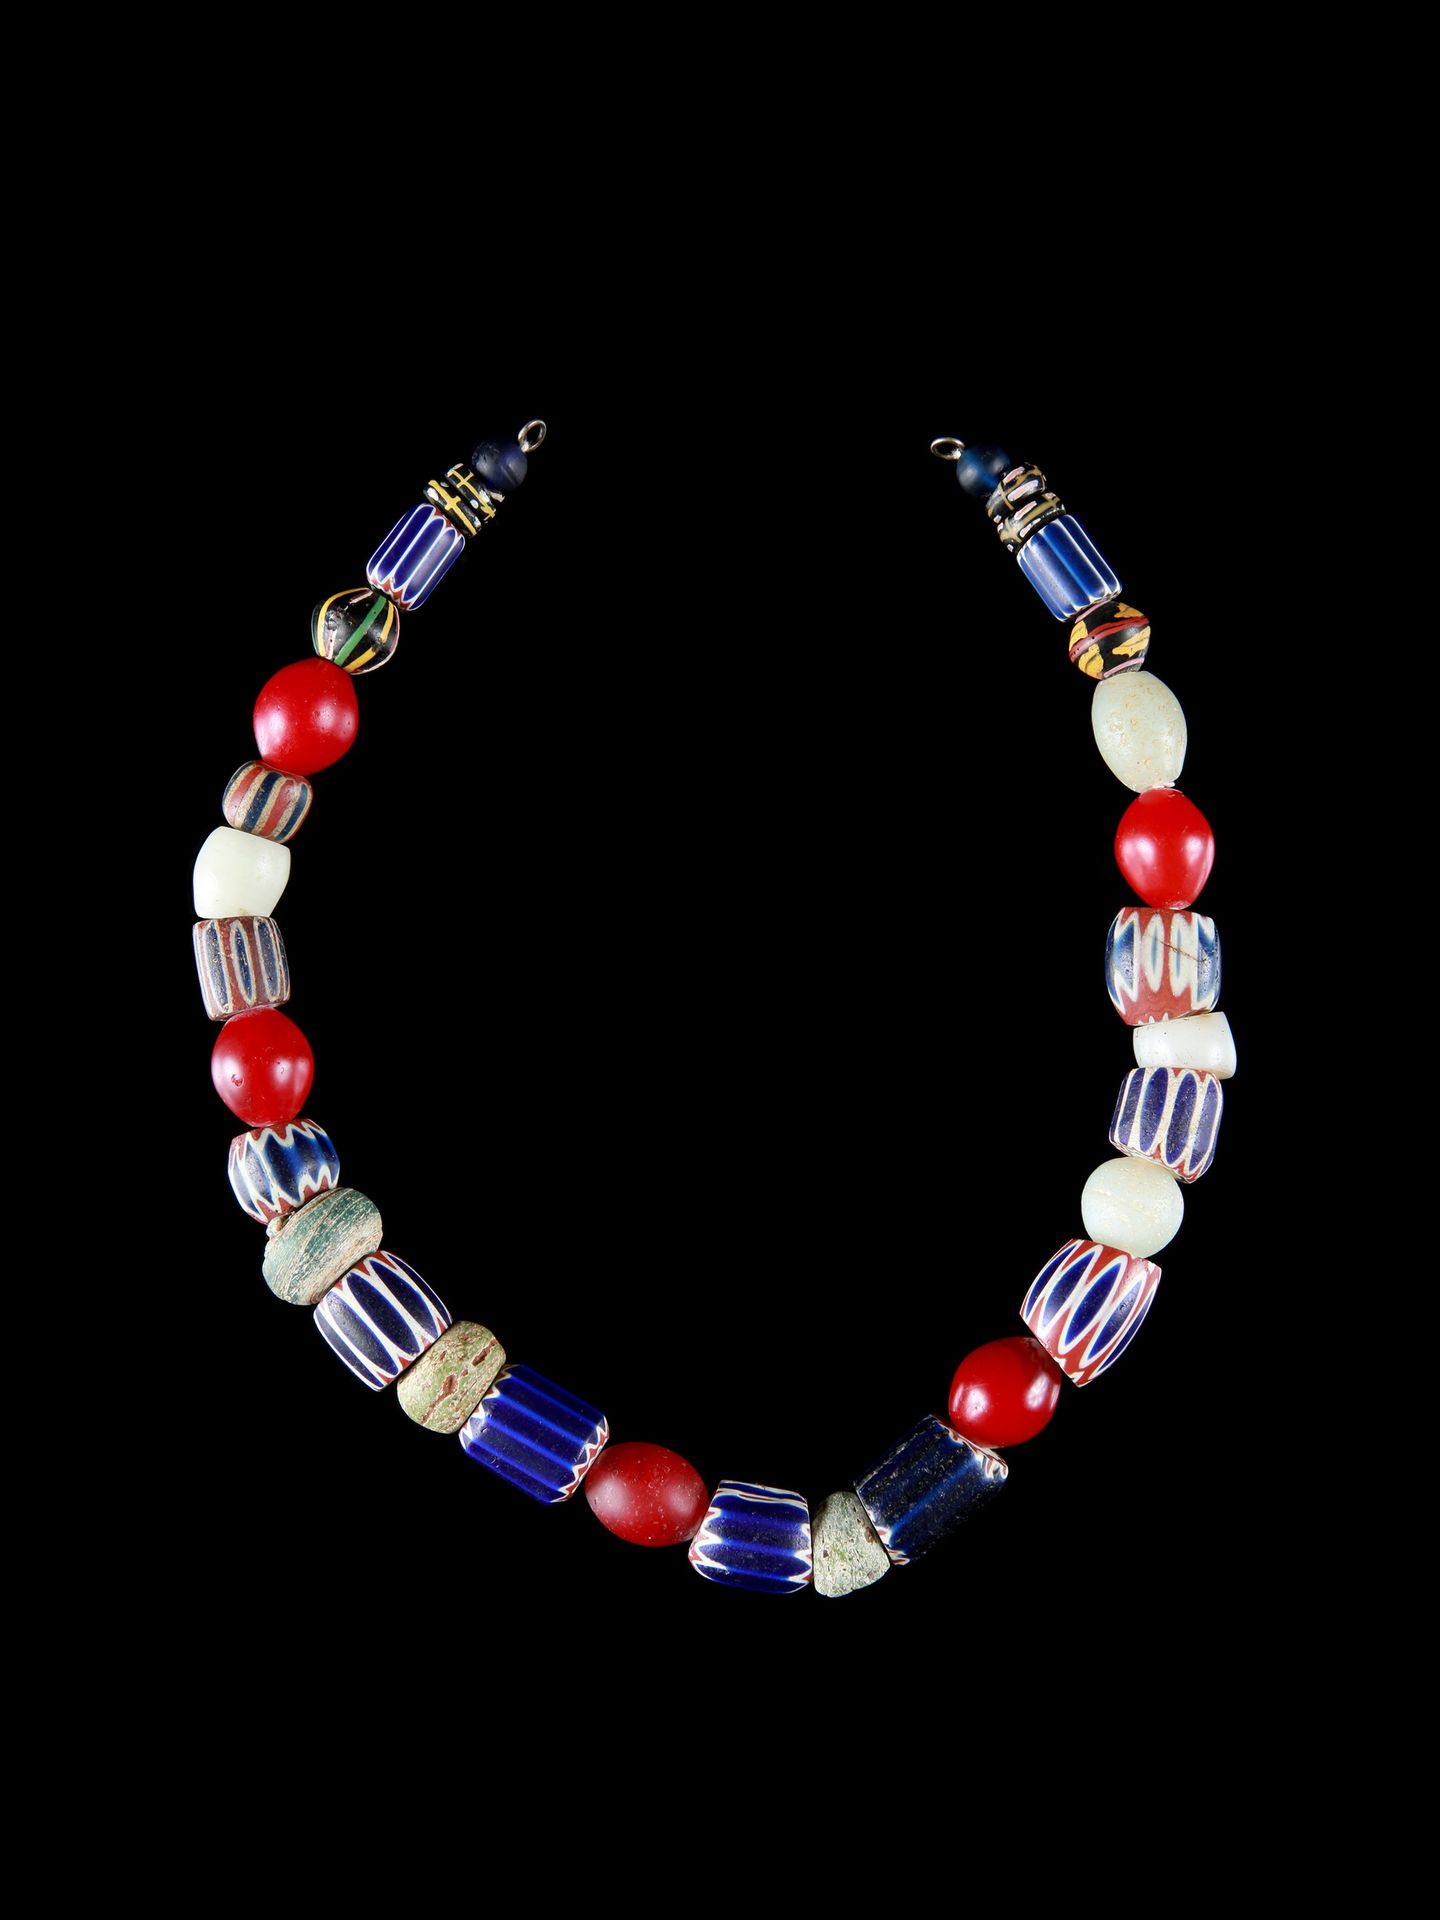 A Glass Beads Necklace 玻璃珠项链

意大利/西非

Ohne Sockel / 无底座

玻璃珠。长27厘米。

 

出处。

瑞士私&hellip;